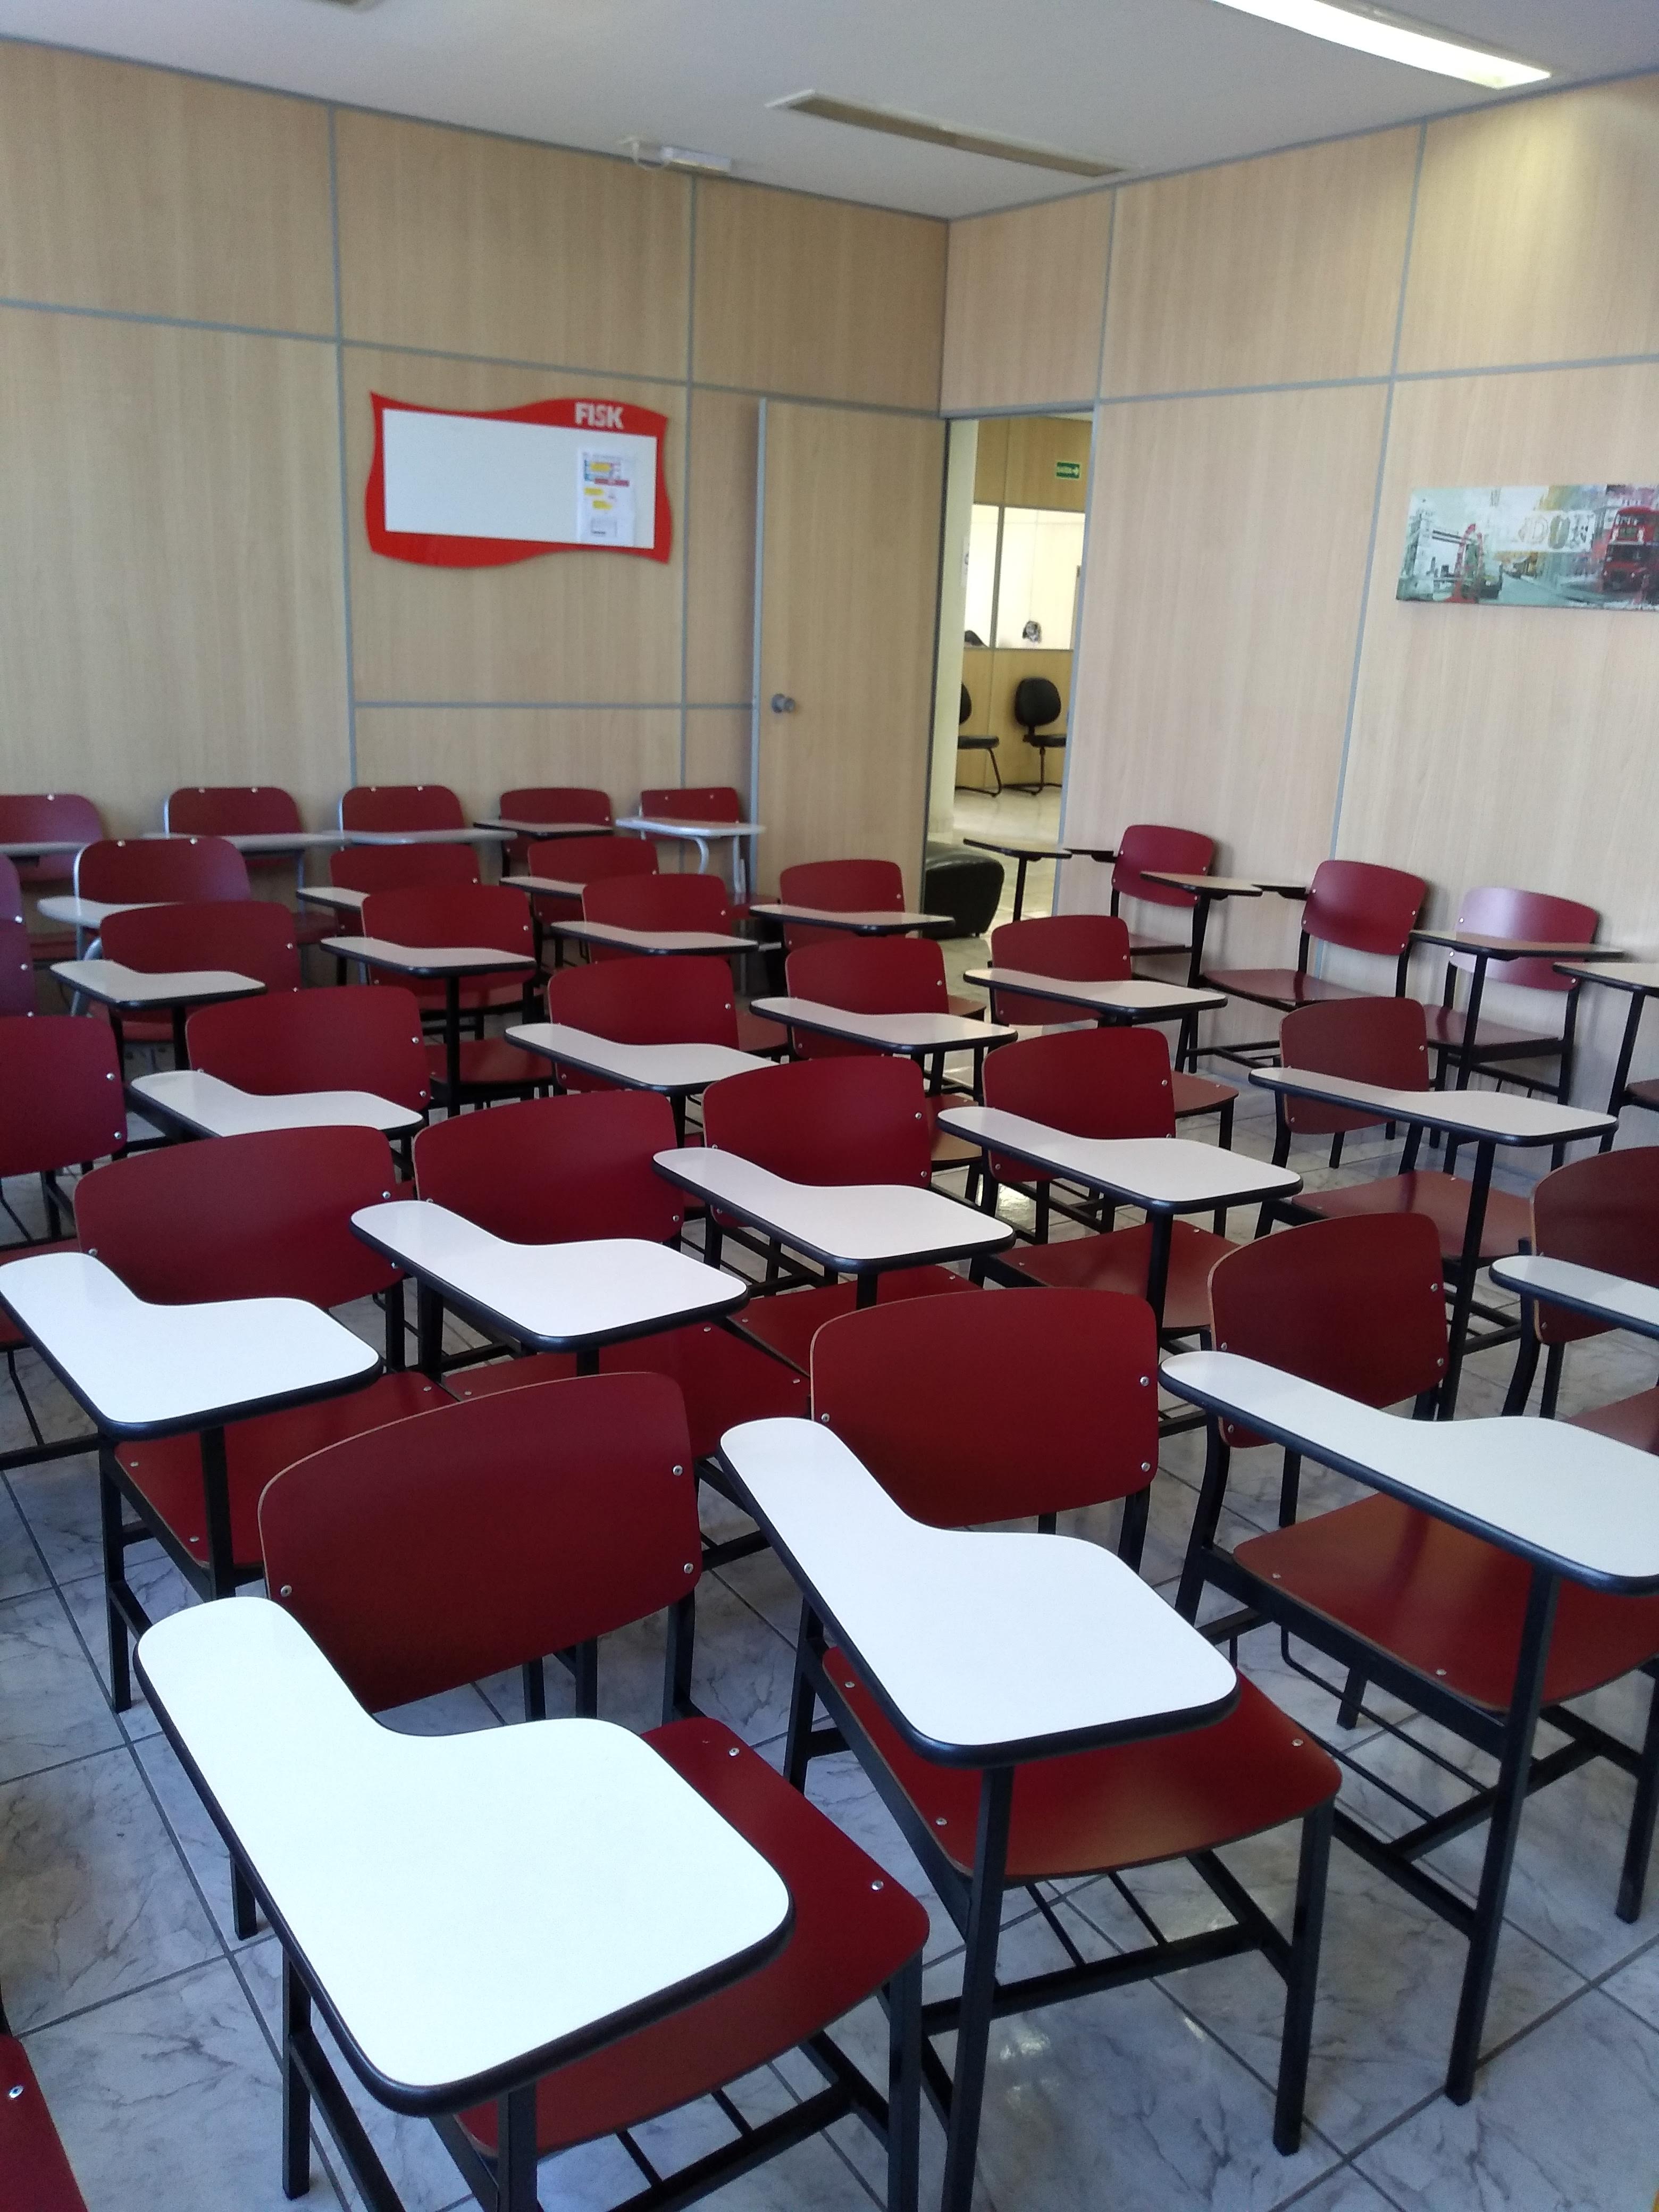 Interior da sala de aula de inglês